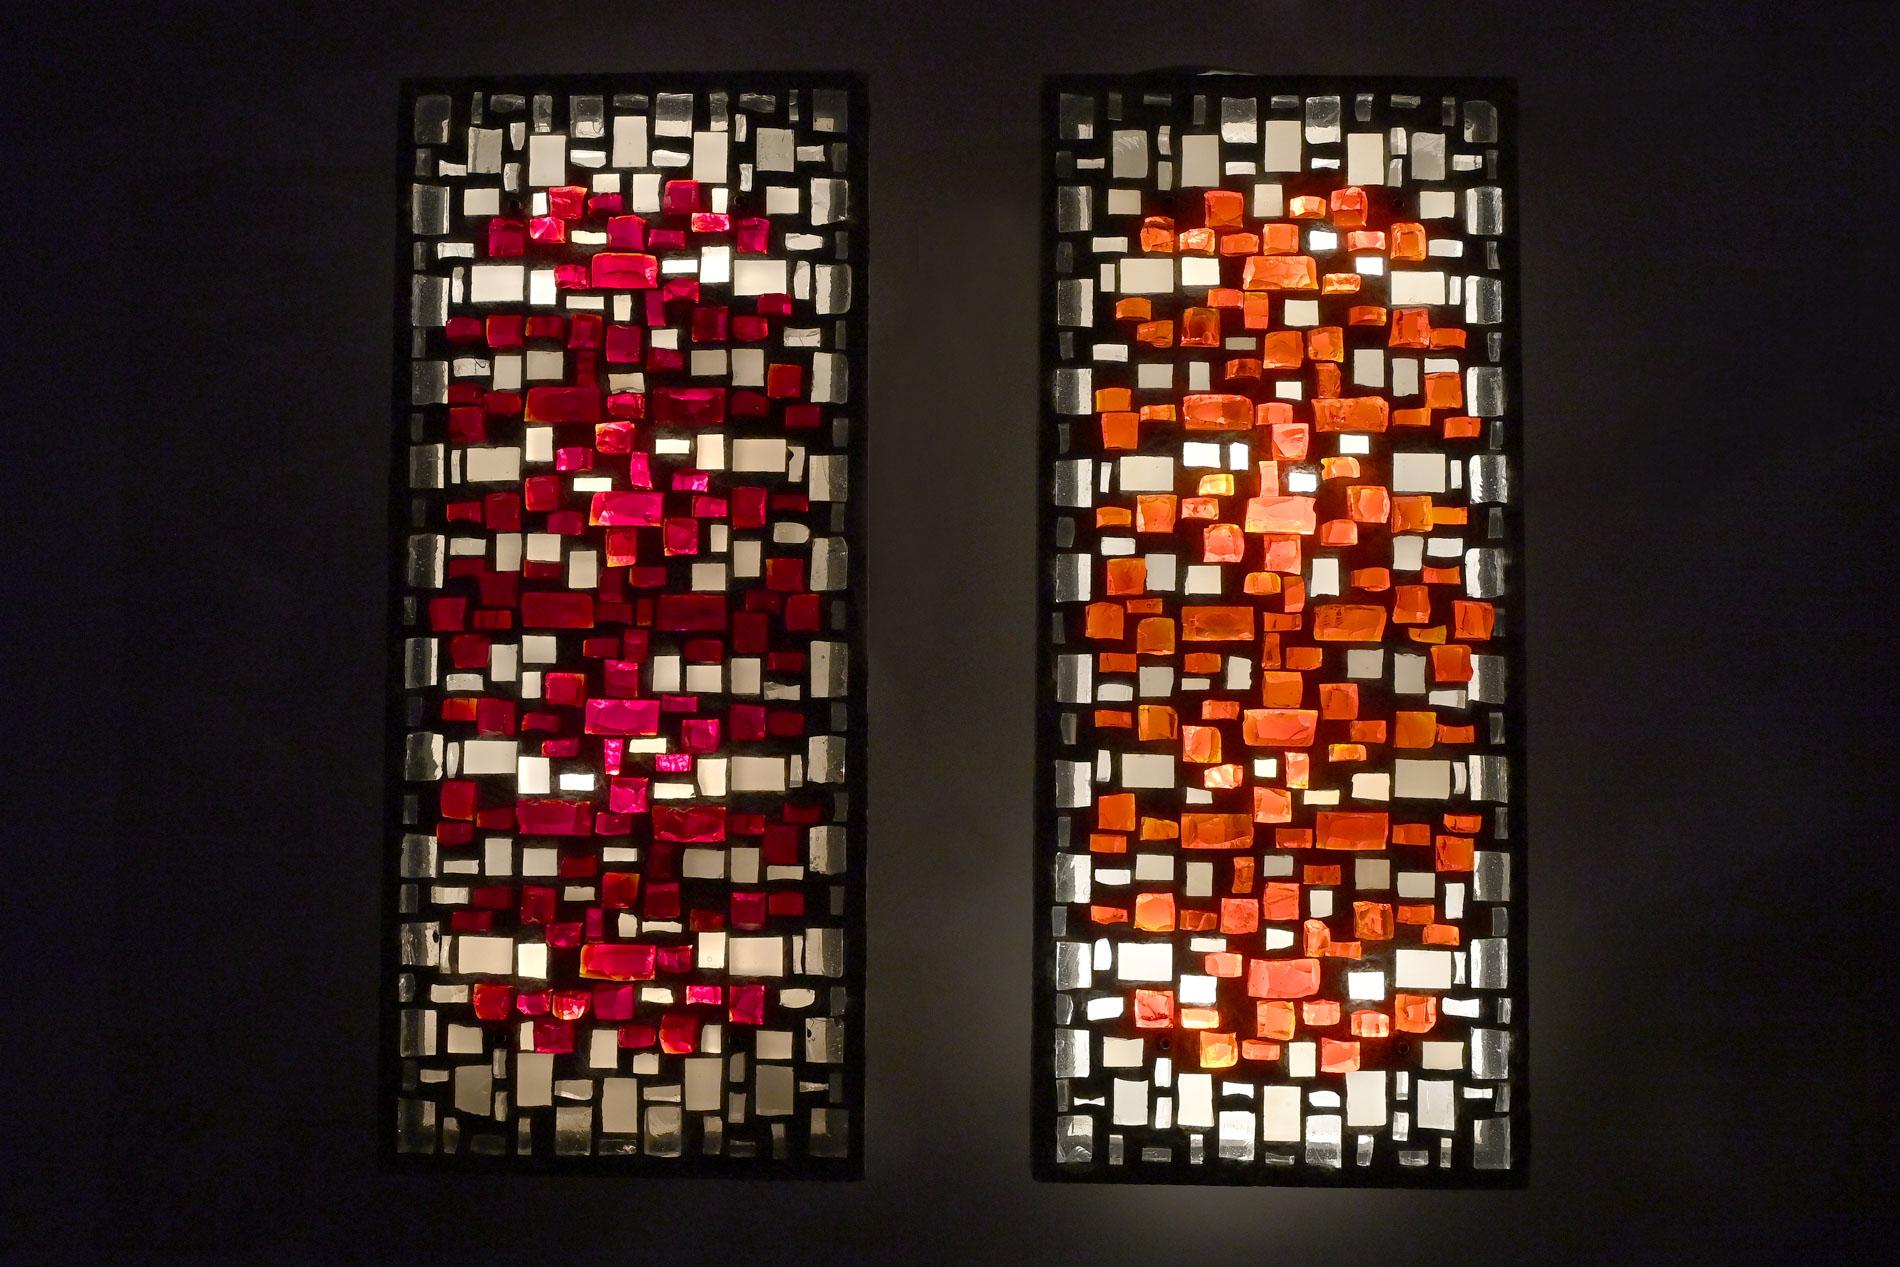 Paar Wandapplikationen mit eingelegten farblosen und gehöckerten roten und orangefarbenen Glassteinen sowie satinierten Glassteinen.
Rechteckige Zementgussplatten, in denen der Glaskünstler die Glassteine angeordnet hat.
Sie sind mit Steckdosen